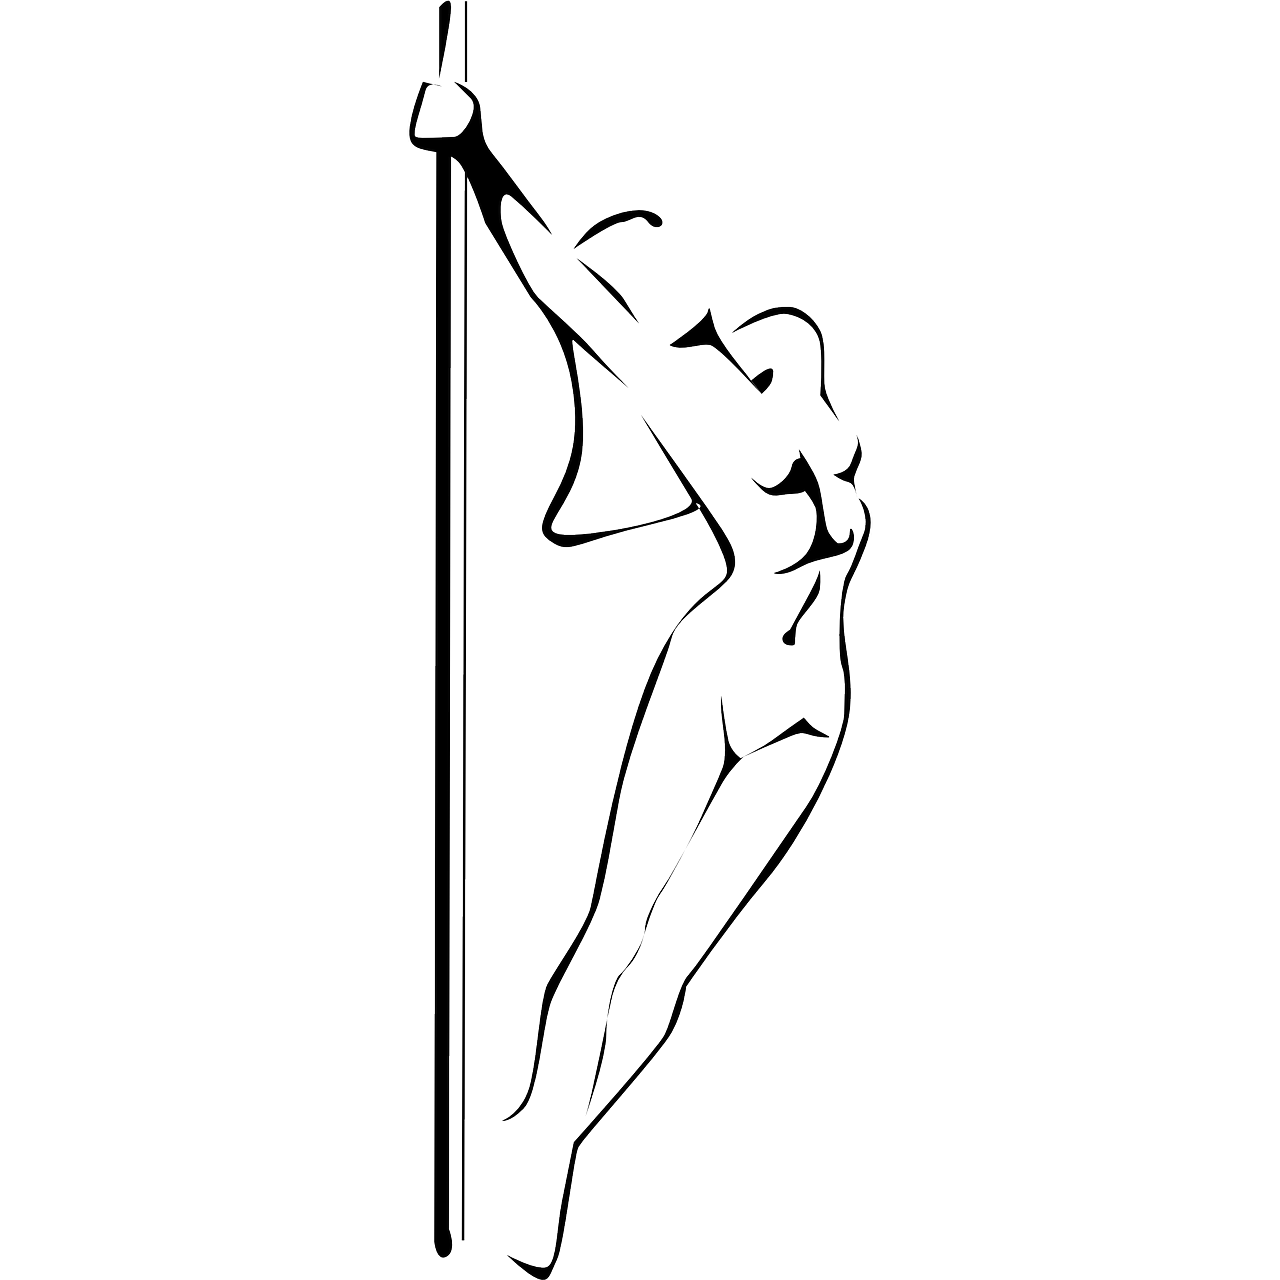 Karin's Pole Dance